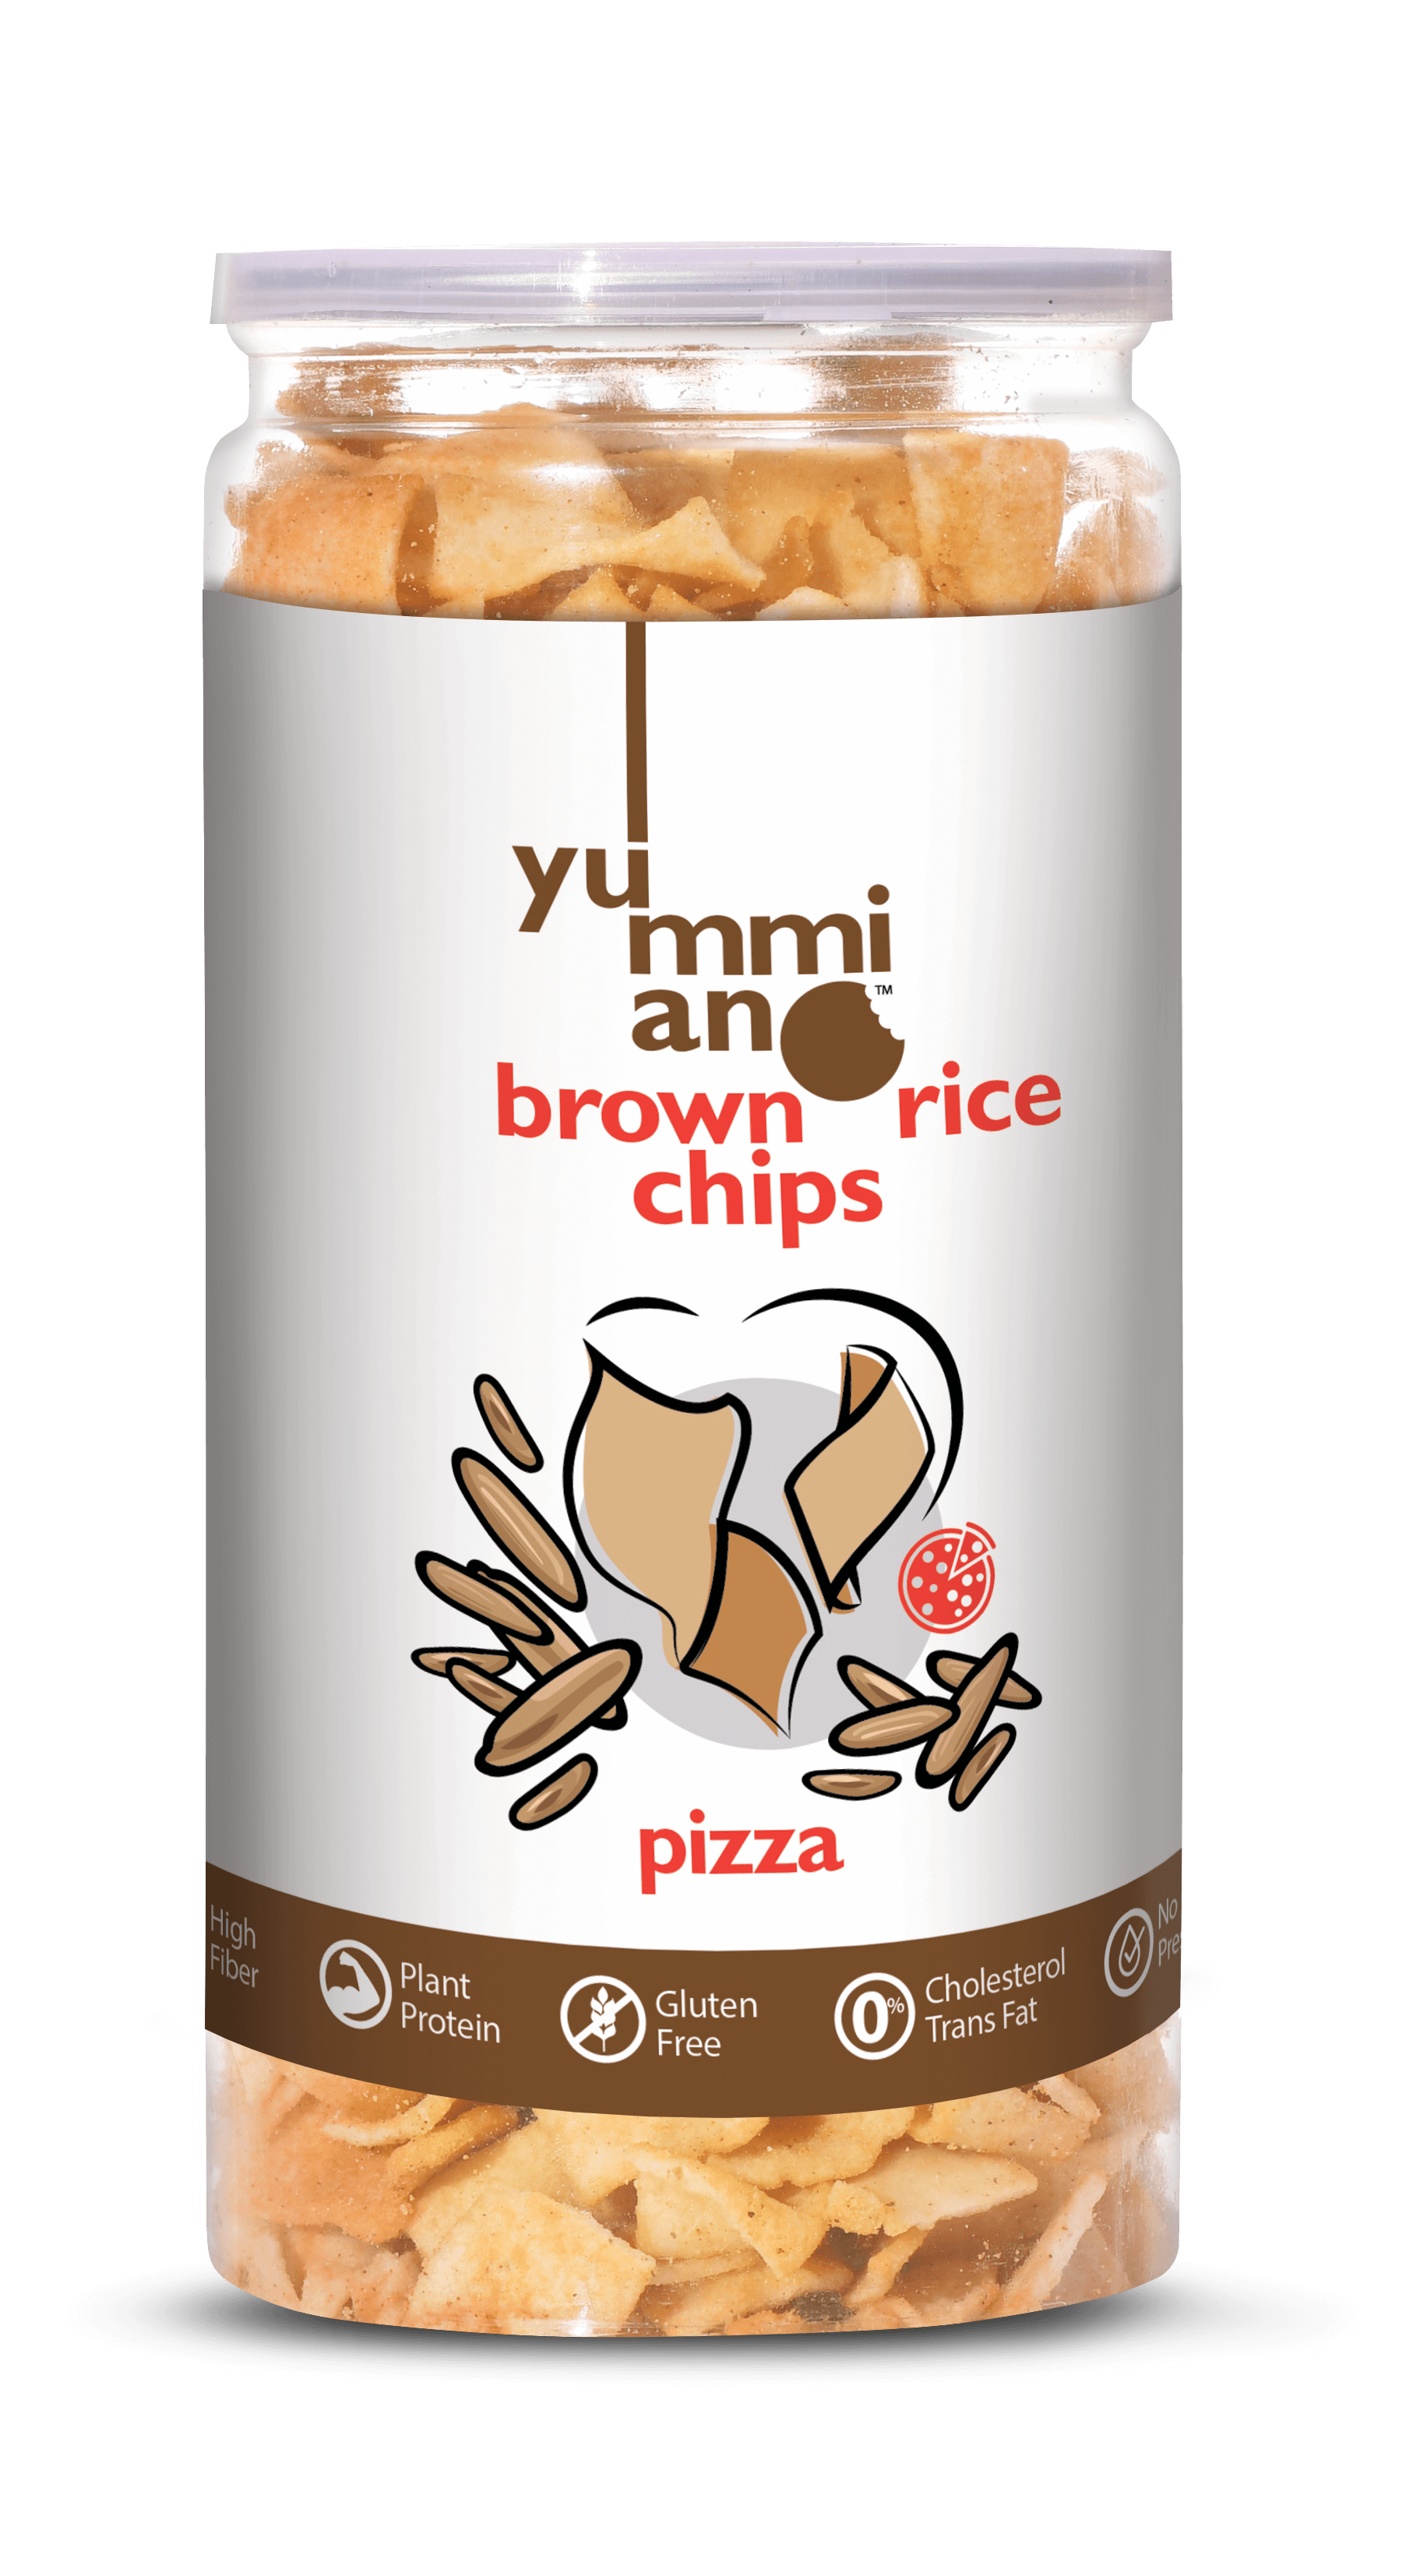 Yummiano Brown Rice Chips â€šÃ„Ã¶âˆšÃ‘âˆšÂ¨ Pizza Image